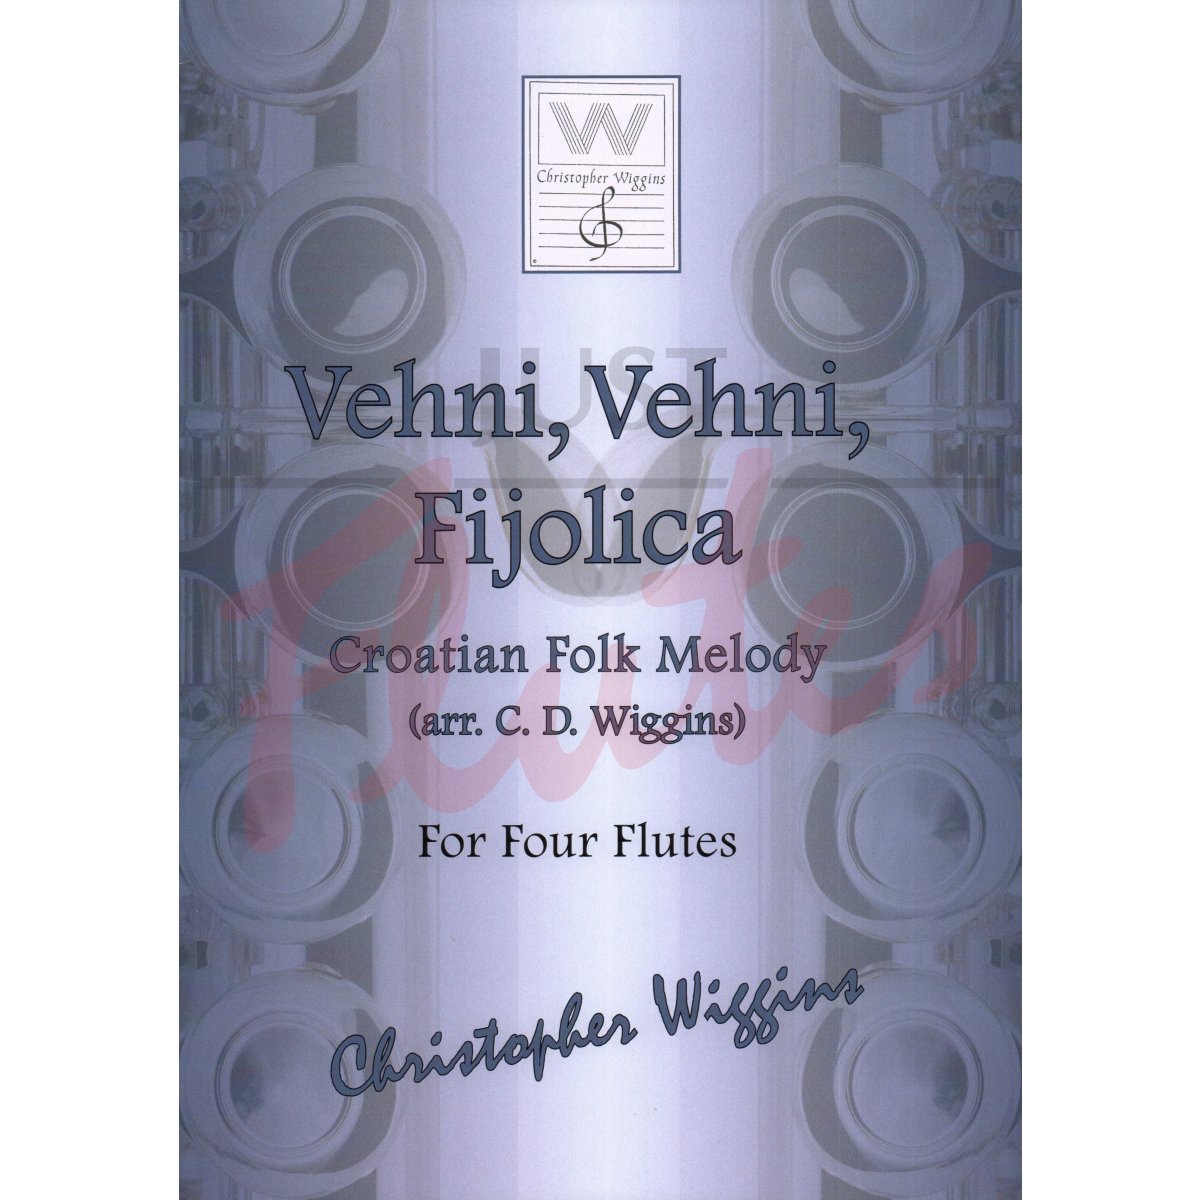 Vehni, Vehni, Fijolica (Croatian Folk Melody) for Four Flutes